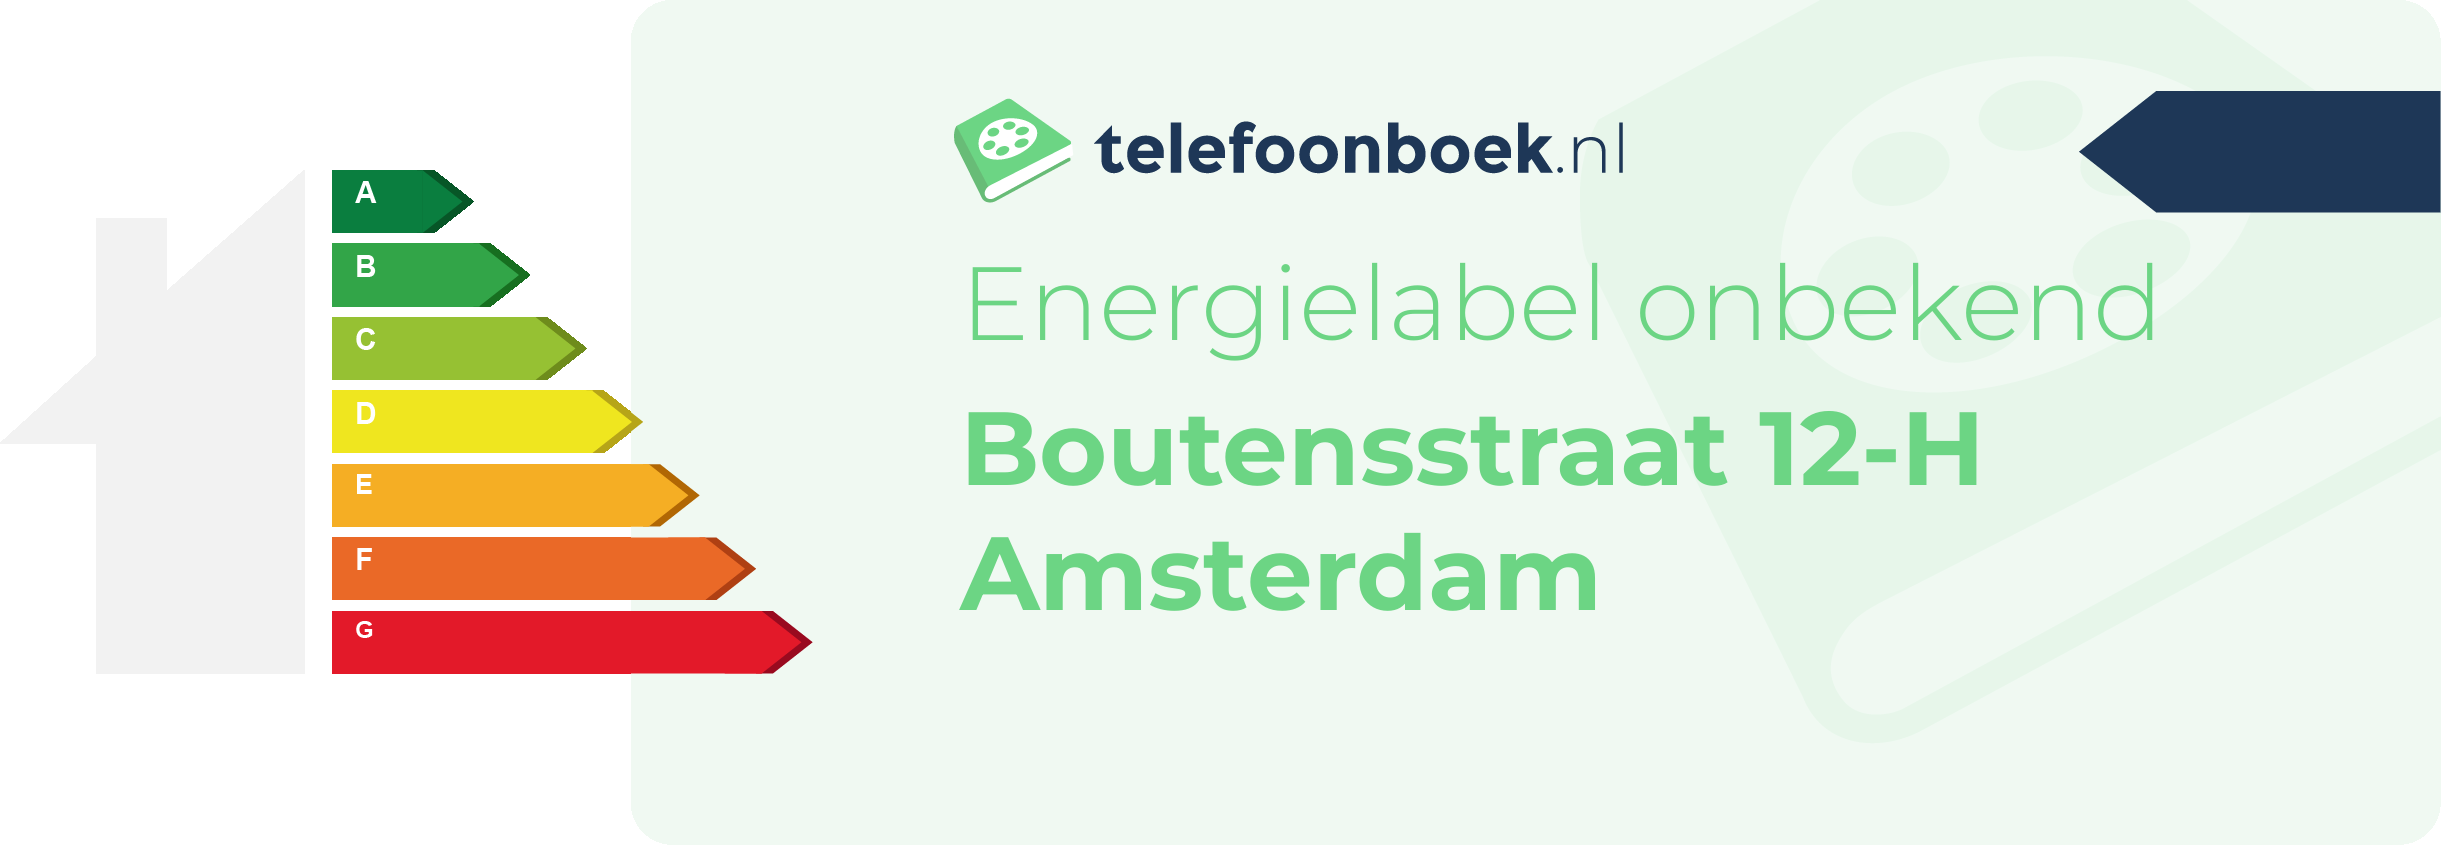 Energielabel Boutensstraat 12-H Amsterdam